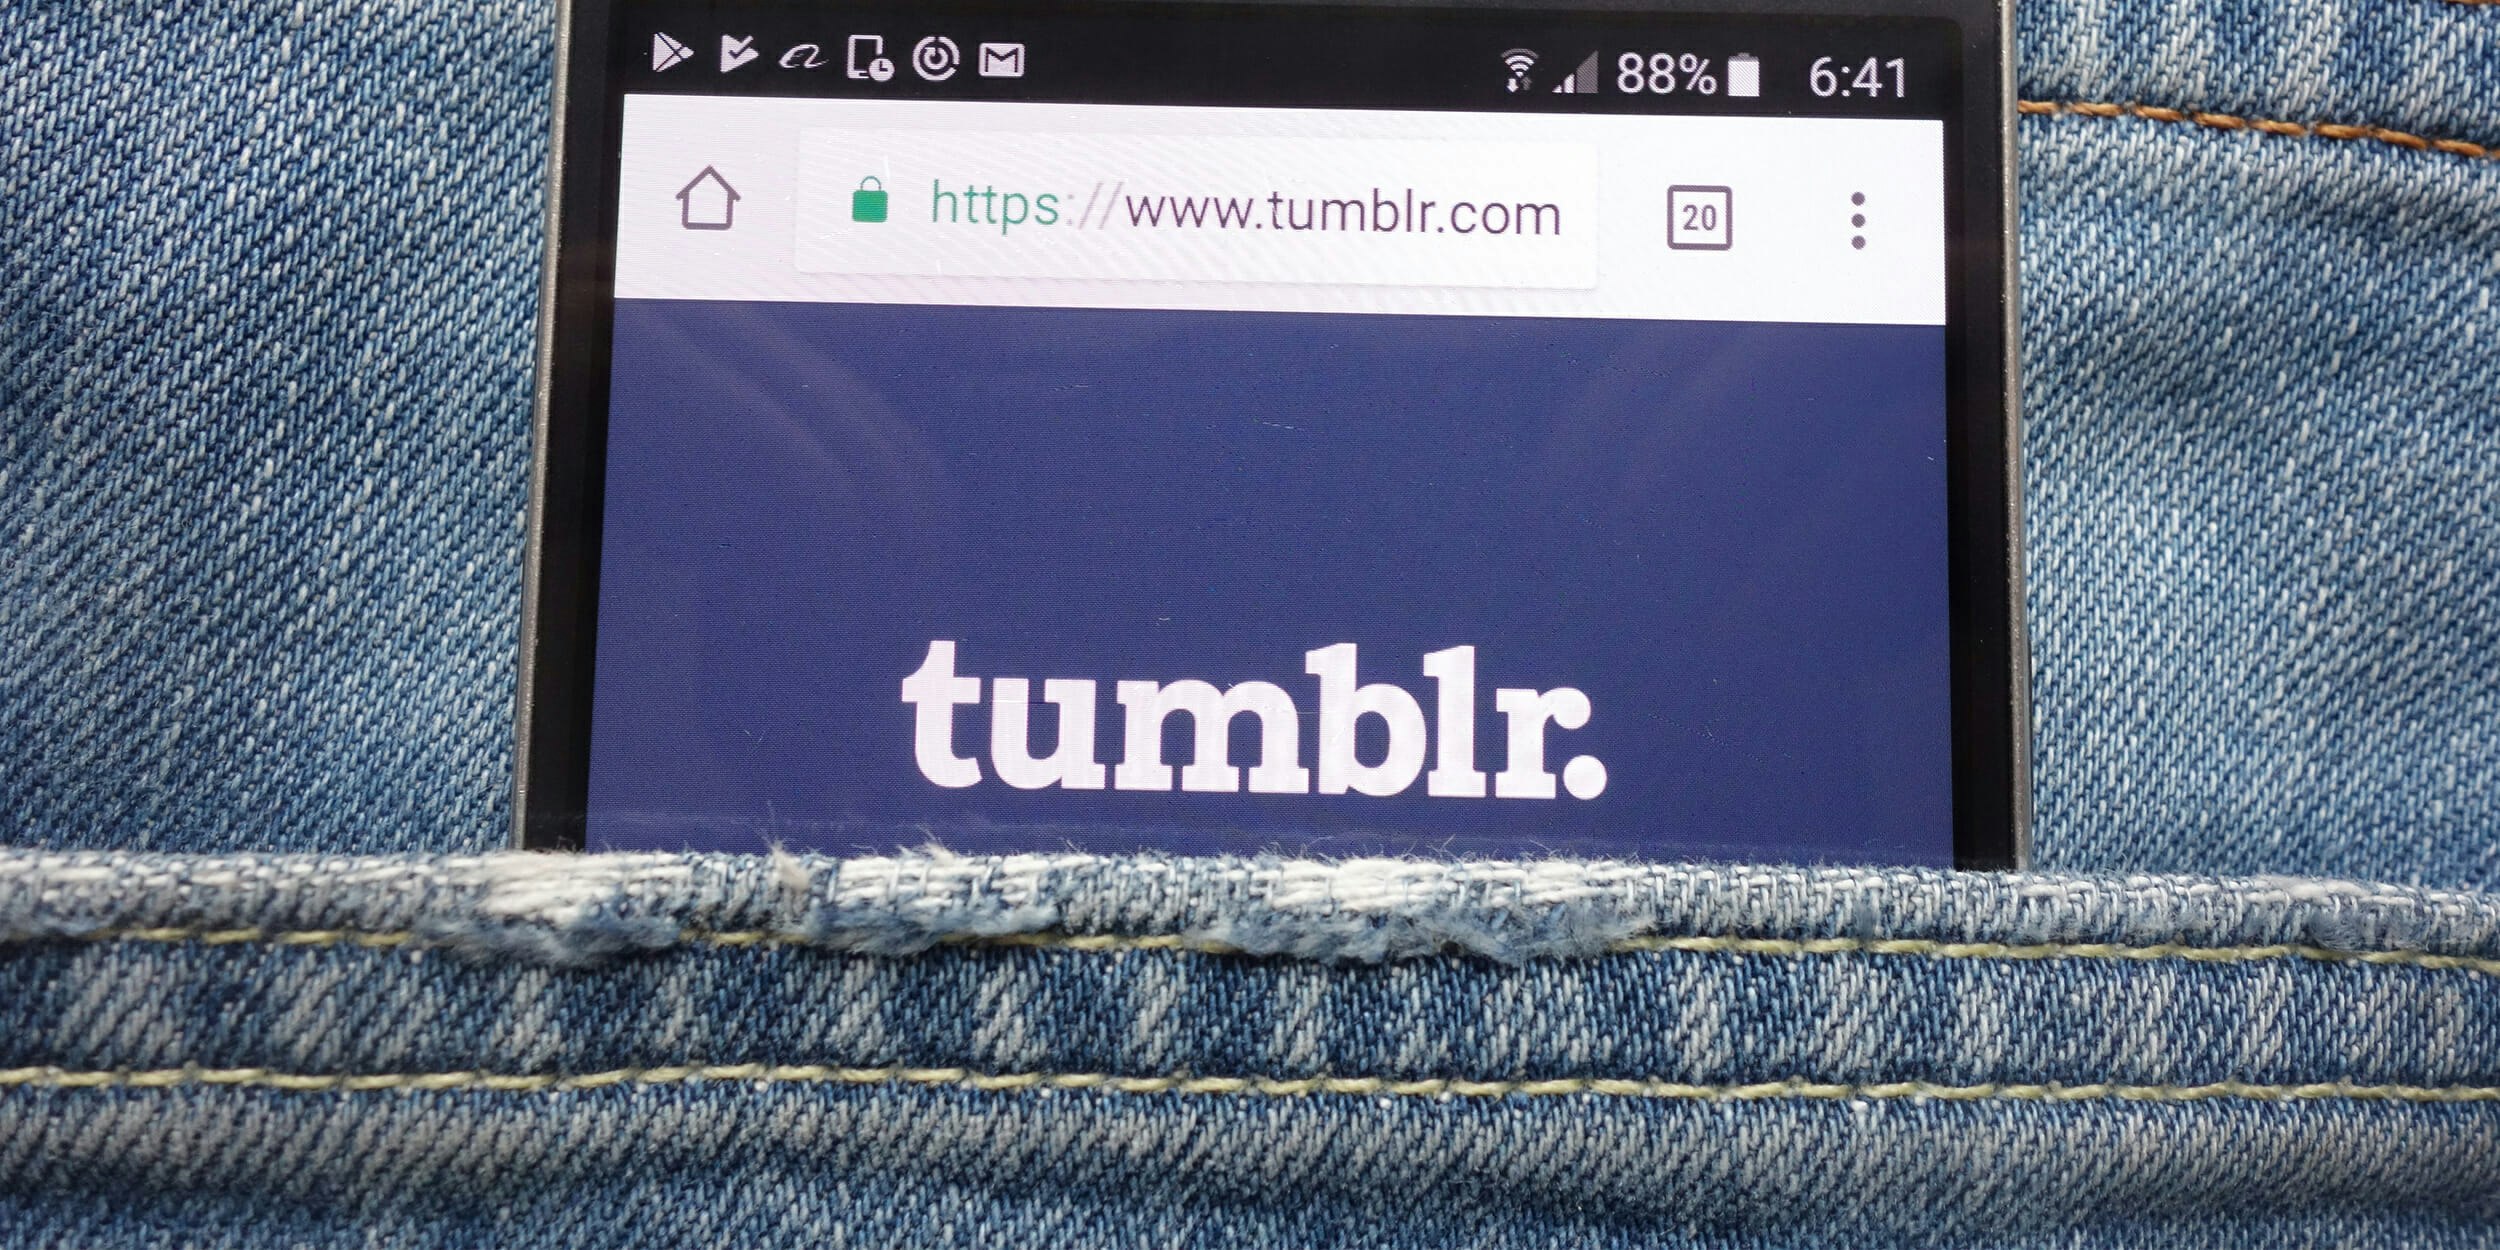 Tumblr Porn Accounts